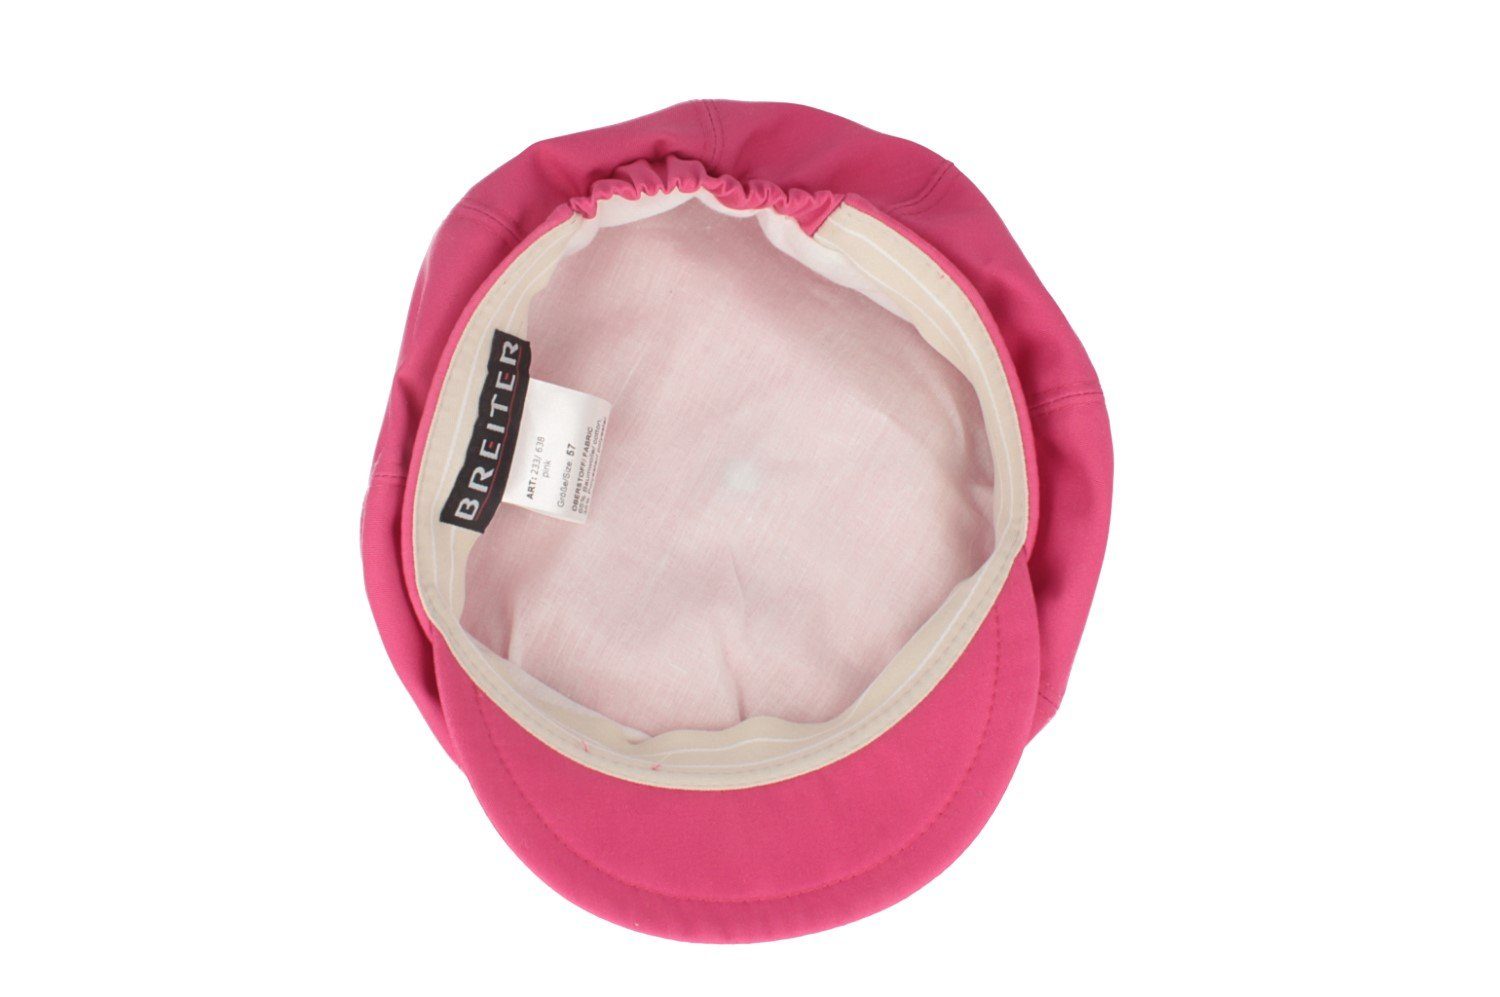 Ballonmütze/Cap 8-teilige Baseball Cap Breiter UV-Schutz50+ pink mit